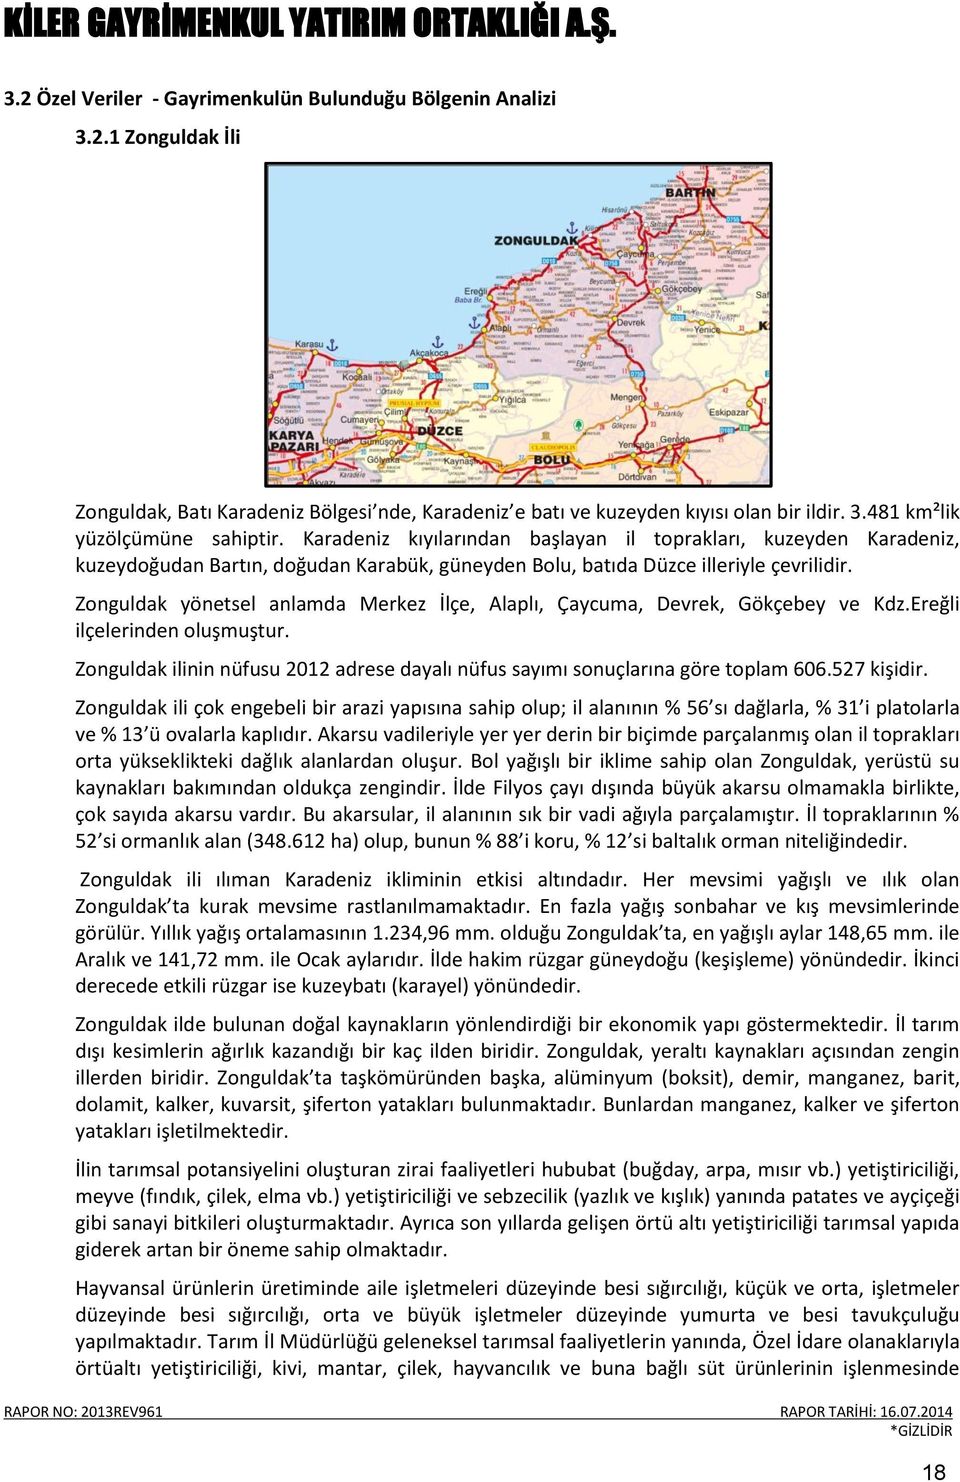 Zonguldak yönetsel anlamda Merkez İlçe, Alaplı, Çaycuma, Devrek, Gökçebey ve Kdz.Ereğli ilçelerinden oluşmuştur. Zonguldak ilinin nüfusu 2012 adrese dayalı nüfus sayımı sonuçlarına göre toplam 606.